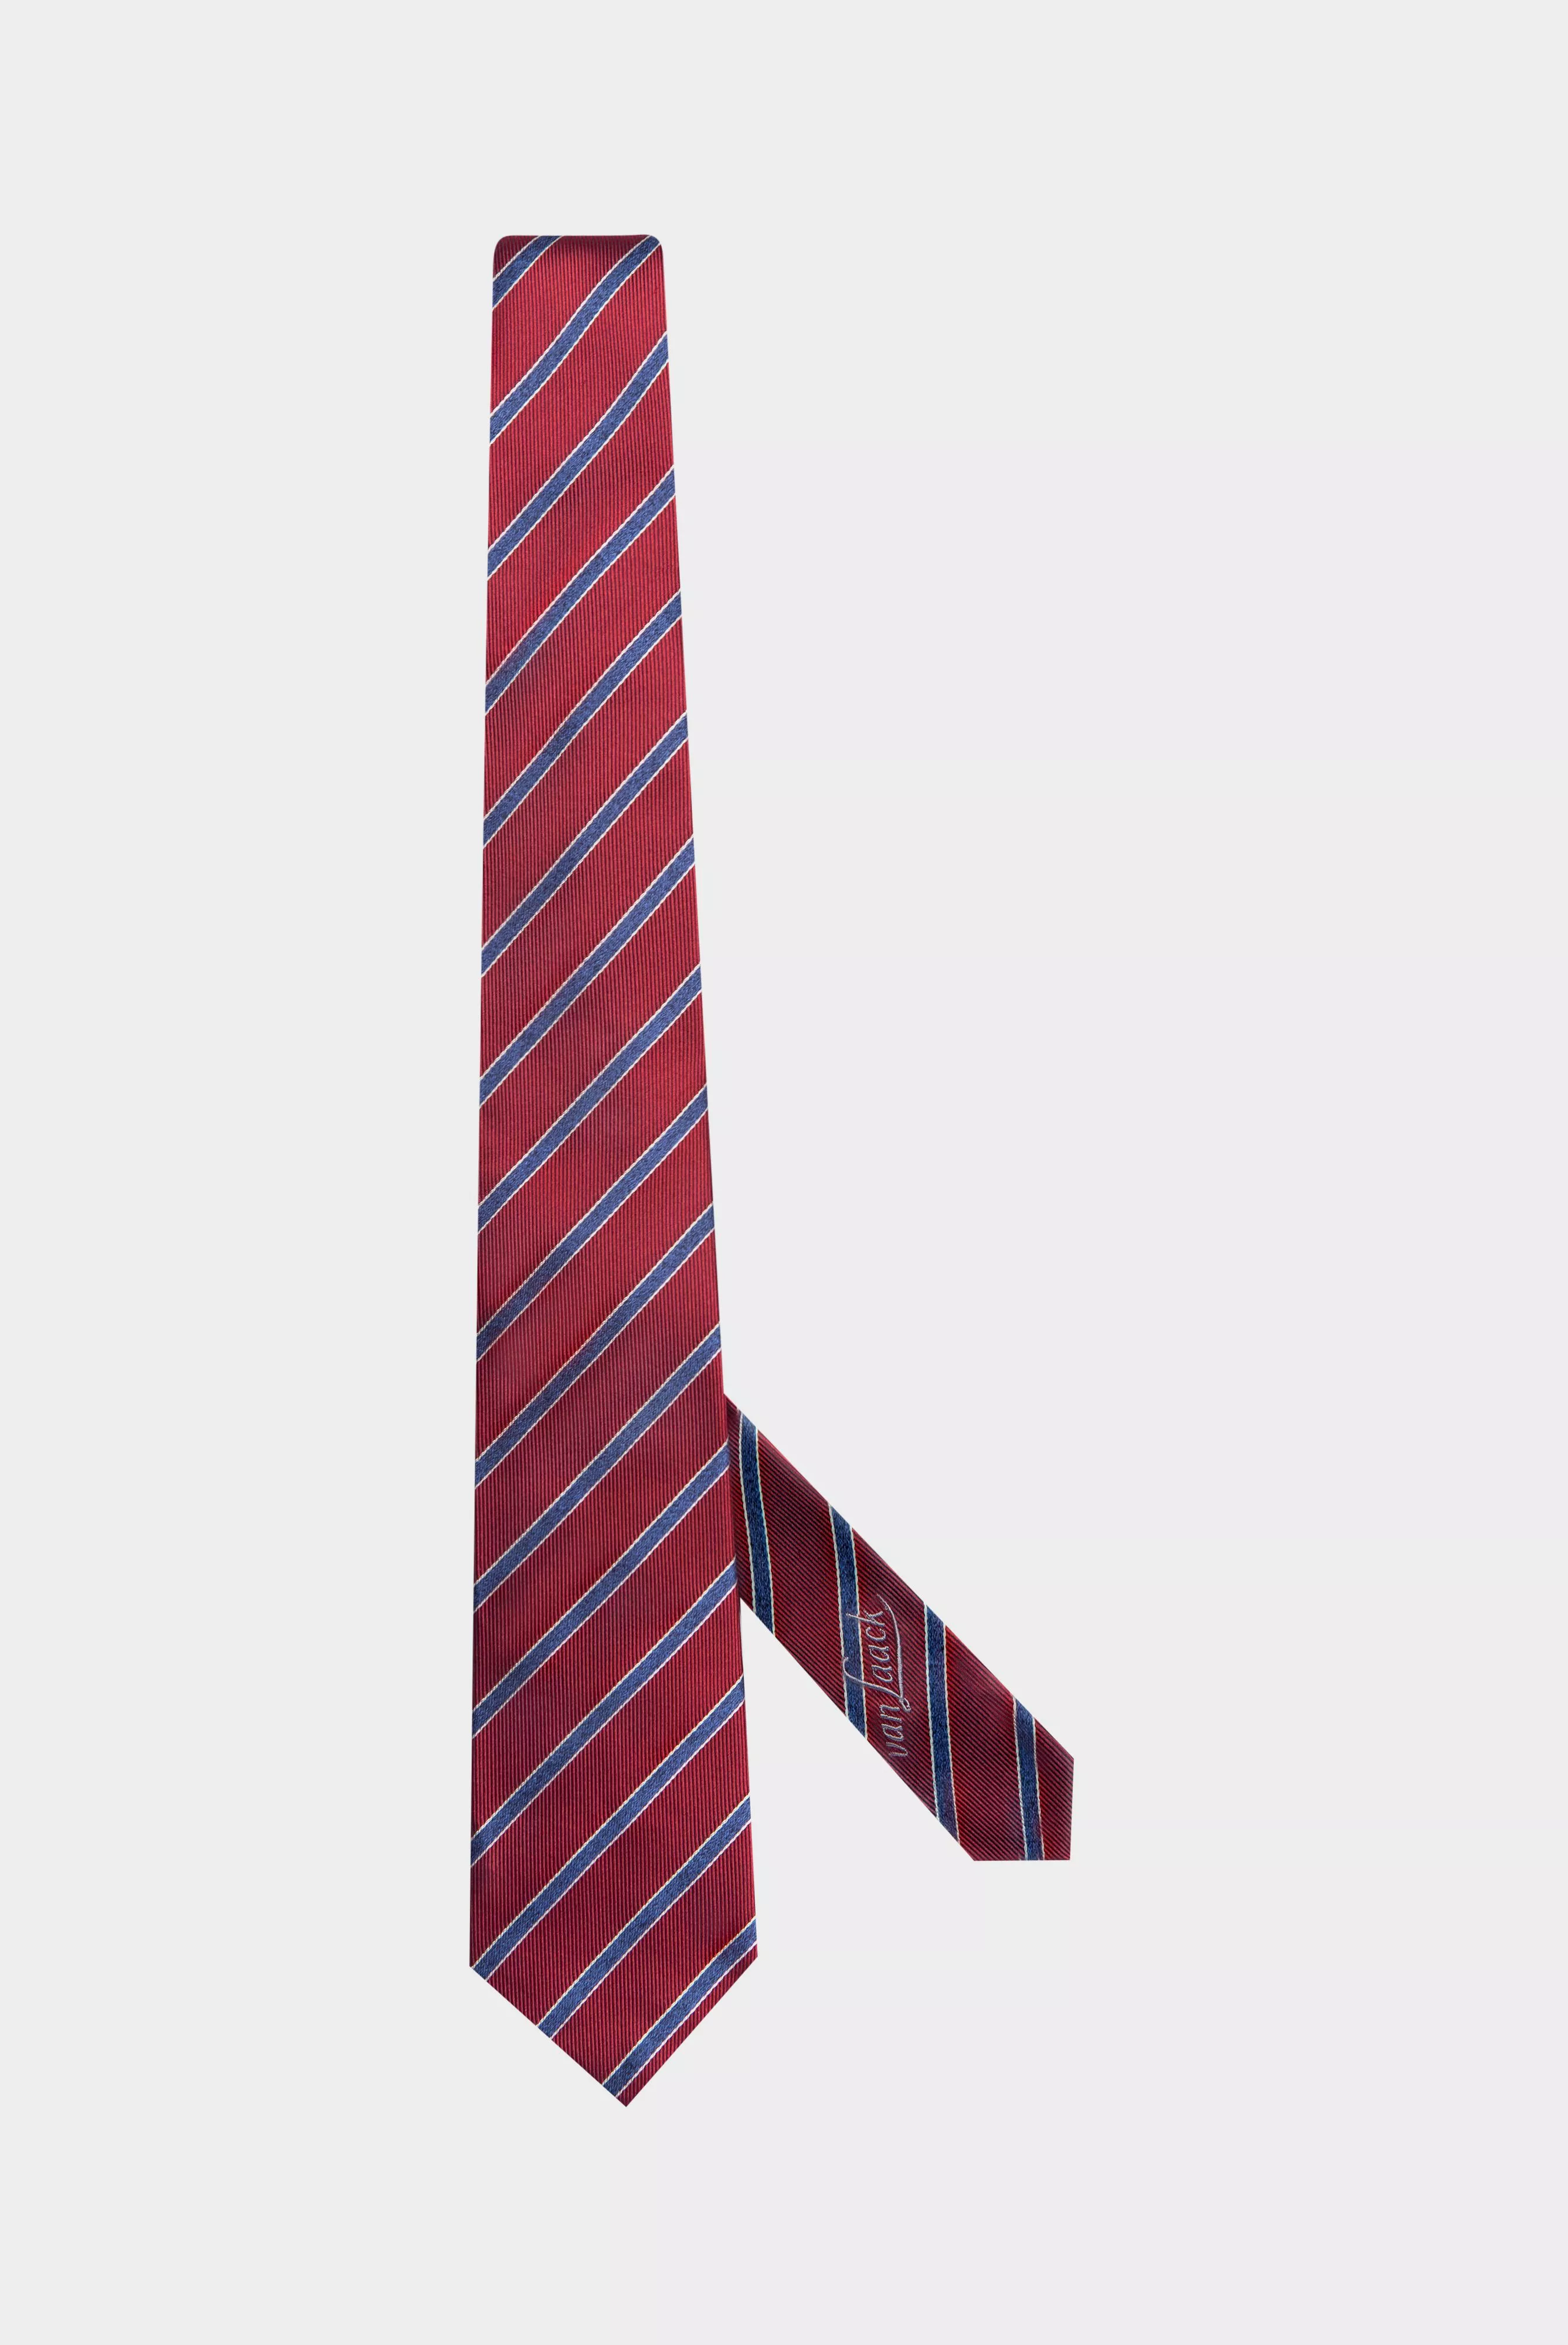 галстук LEROY красный LEROY_K04330_567 ,photo 1